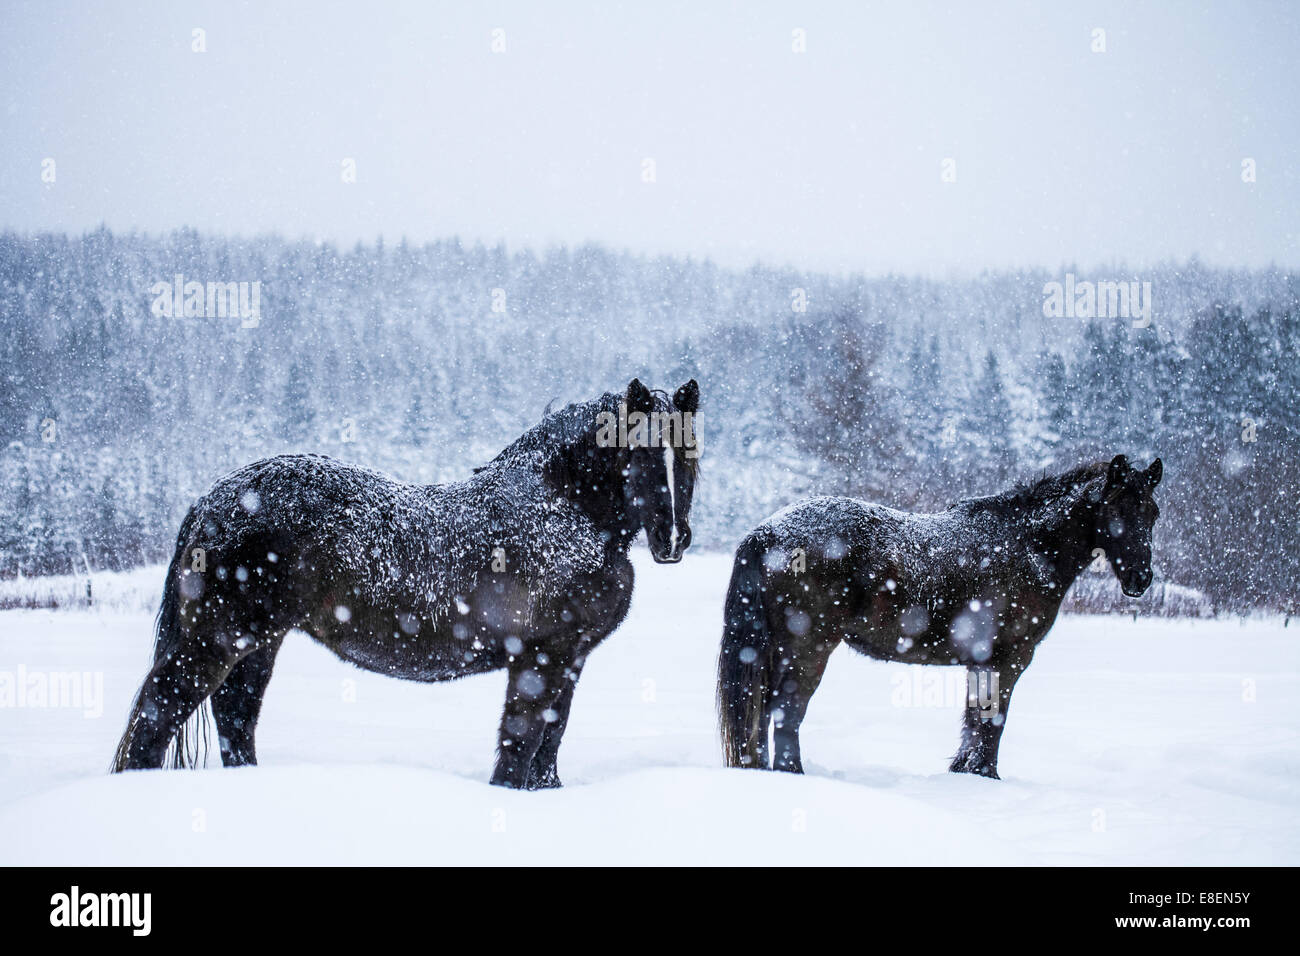 Black horse  Horses, Pretty horses, Black horses